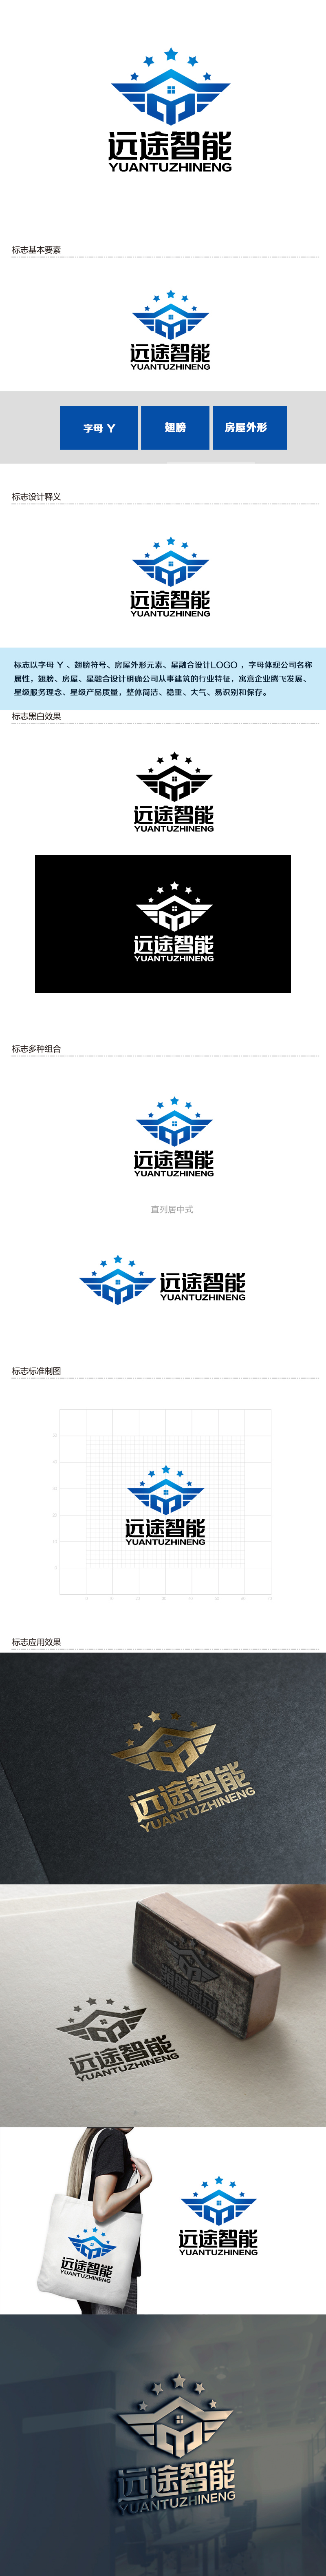 余亮亮的江苏远途智能装配房有限公司logo设计